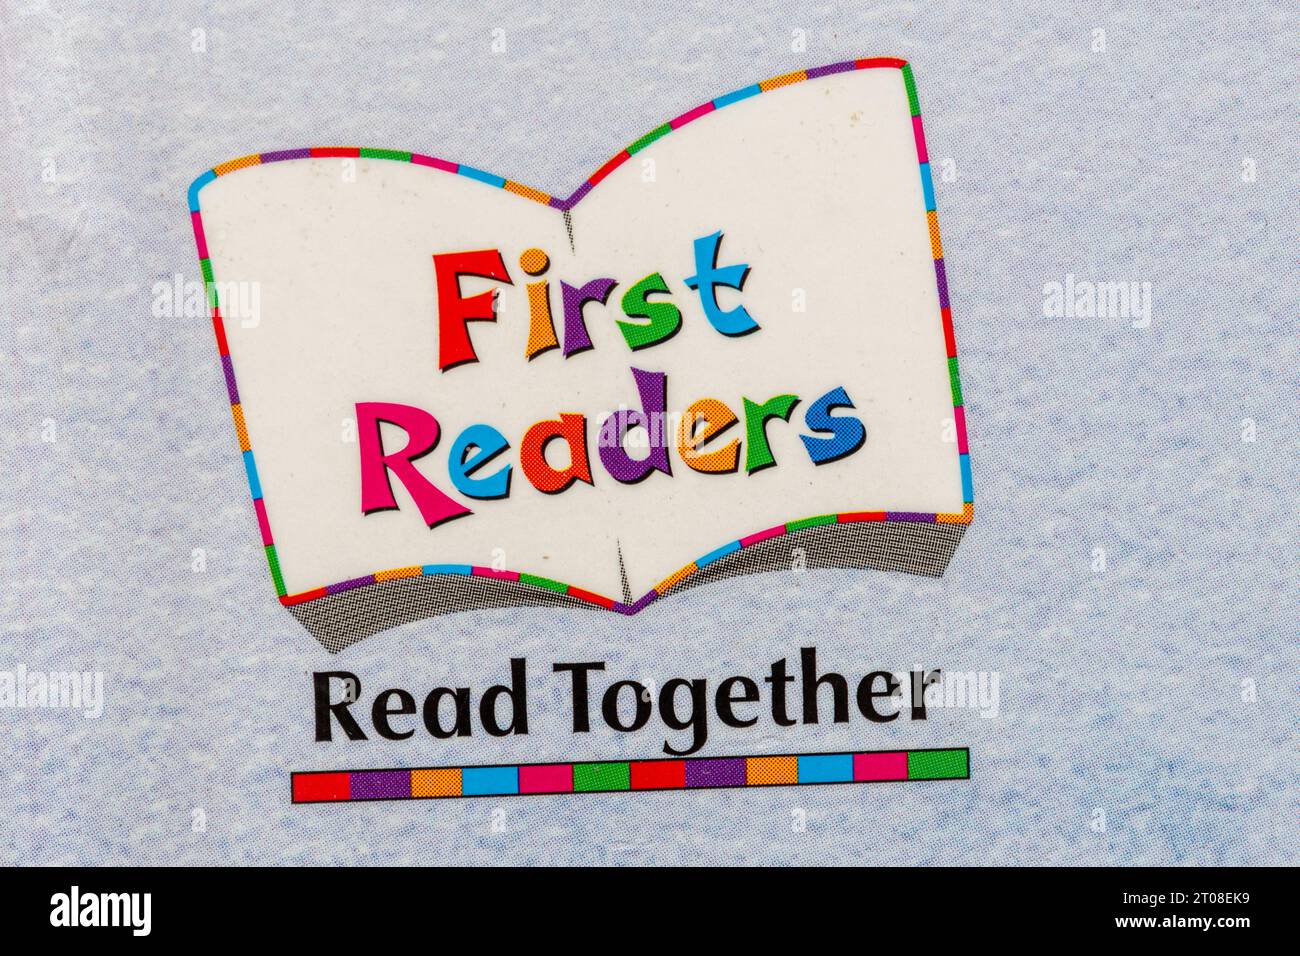 Dettaglio del libro per bambini, prima serie di libri per lettori. Concetto: Imparare a leggere, insegnare la lettura, istruzione precoce, strategia nazionale di alfabetizzazione Foto Stock